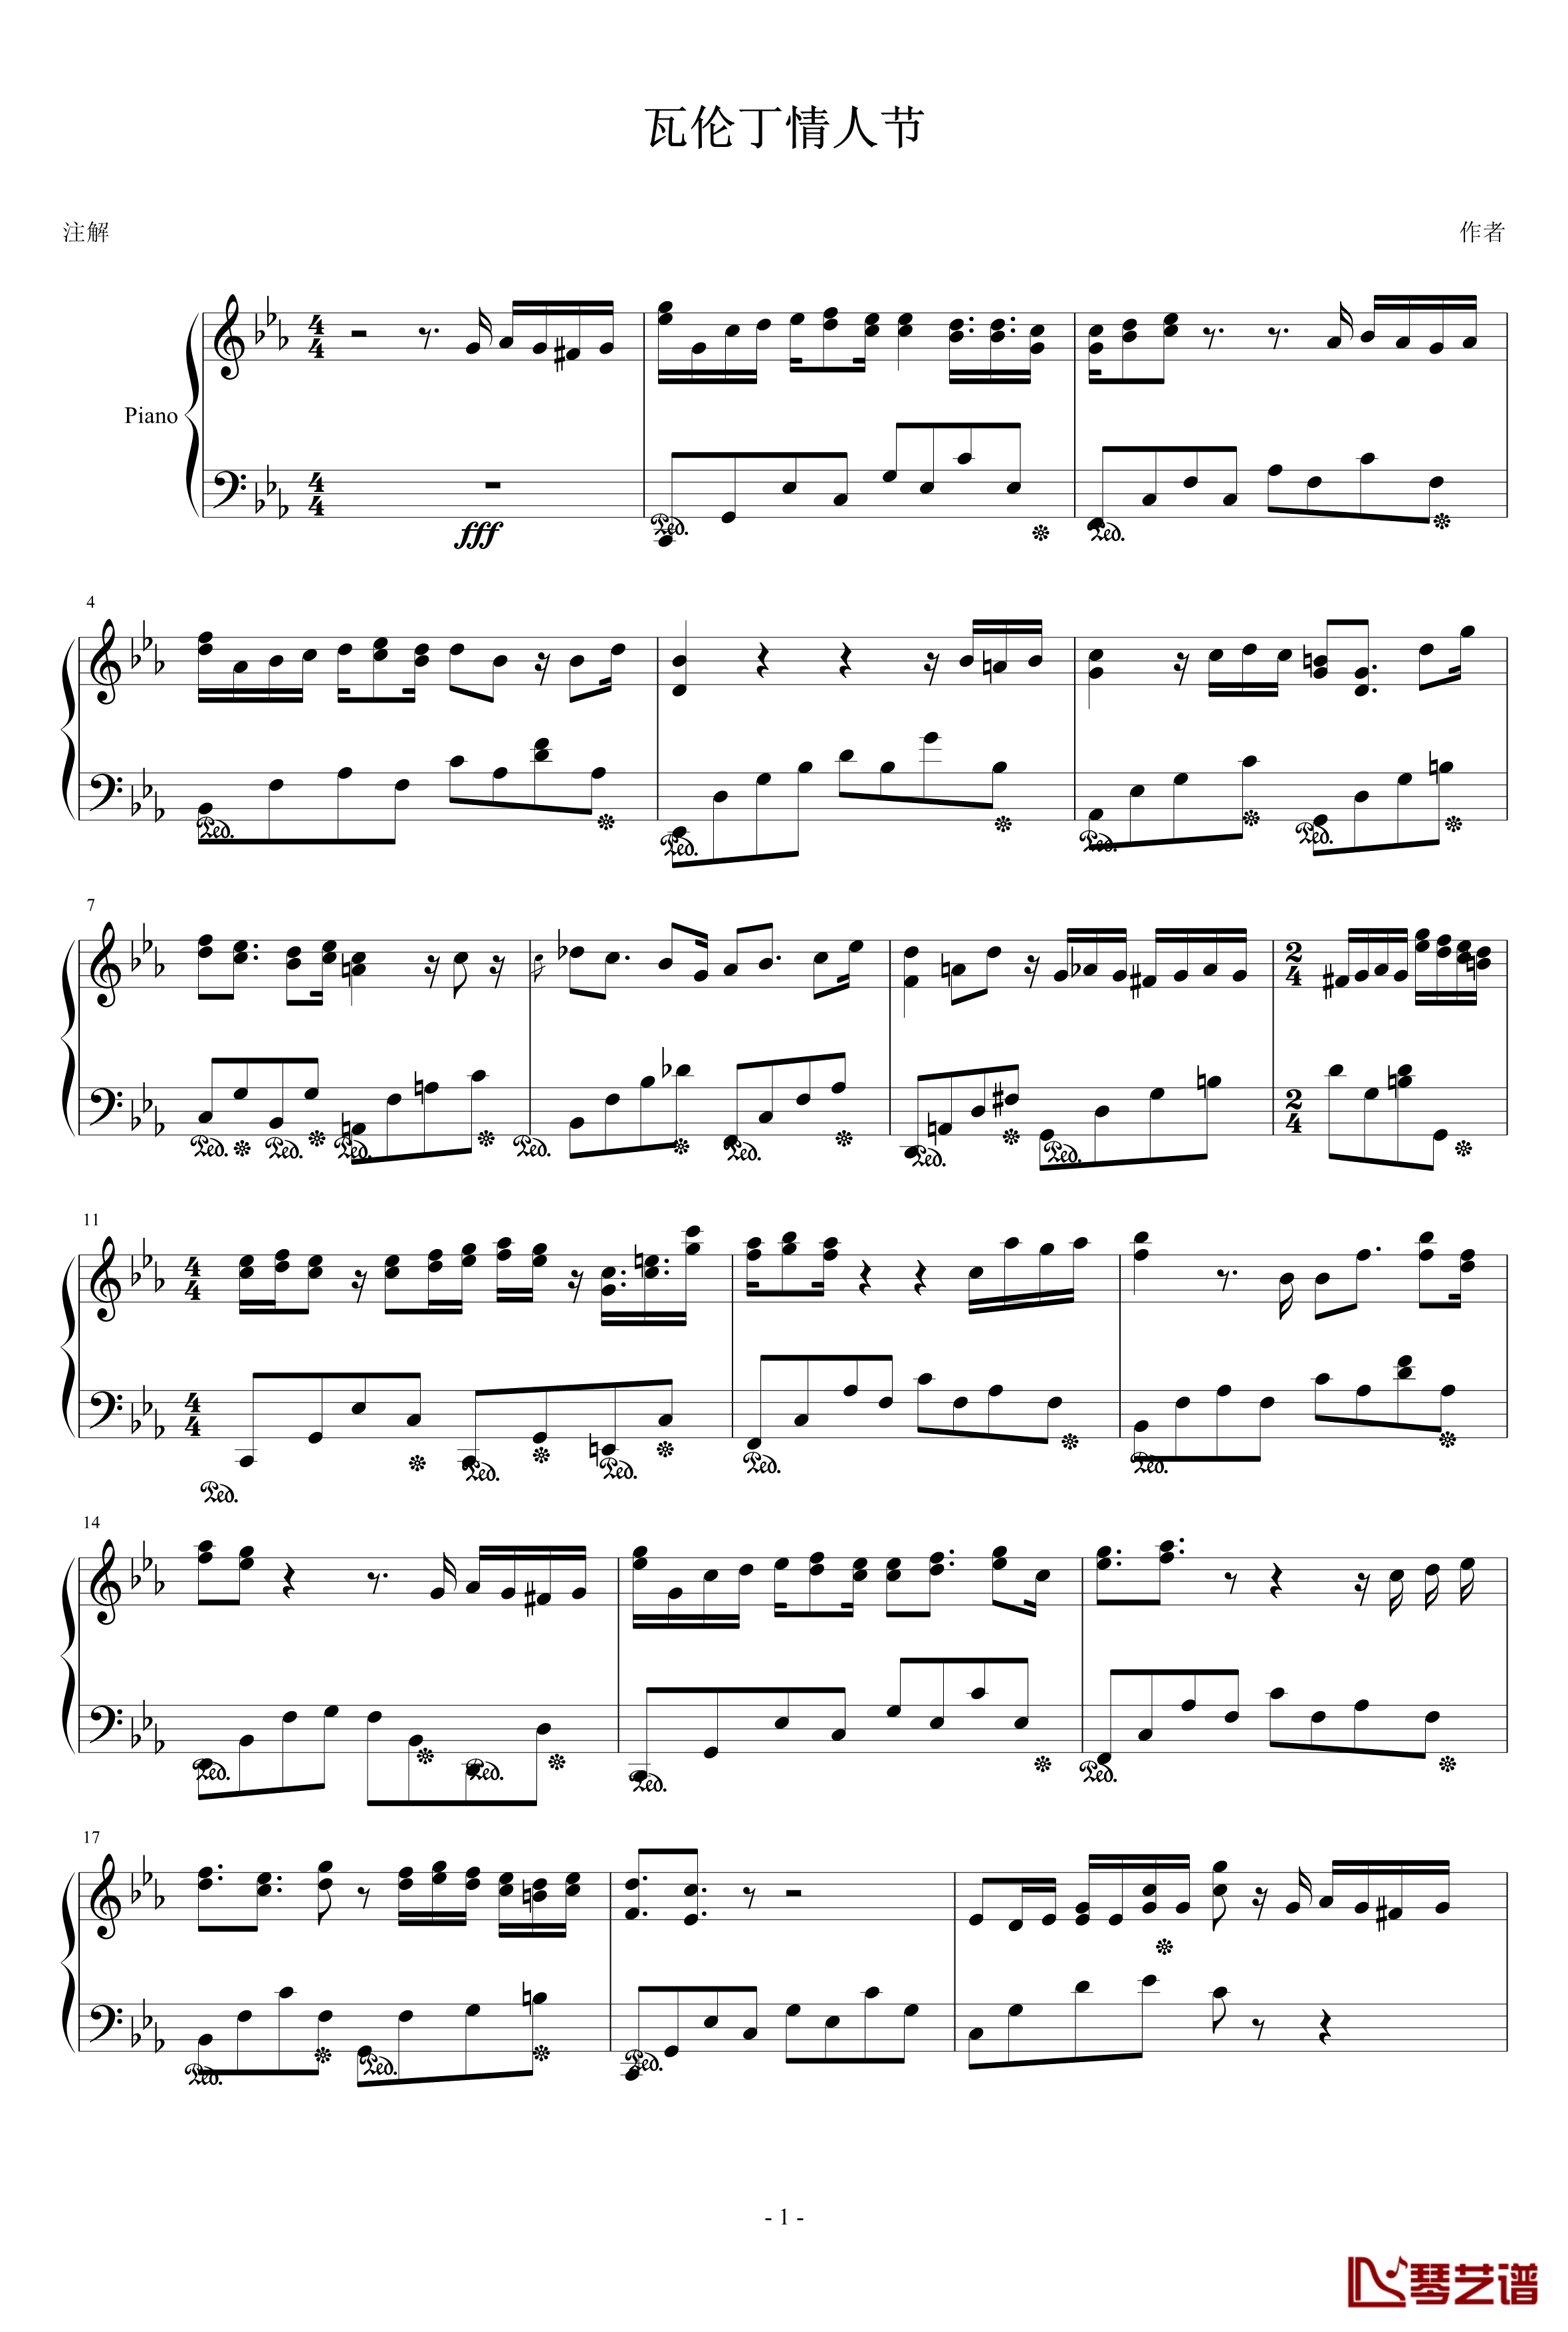 瓦伦丁情人节钢琴谱-2.14-ellocz1